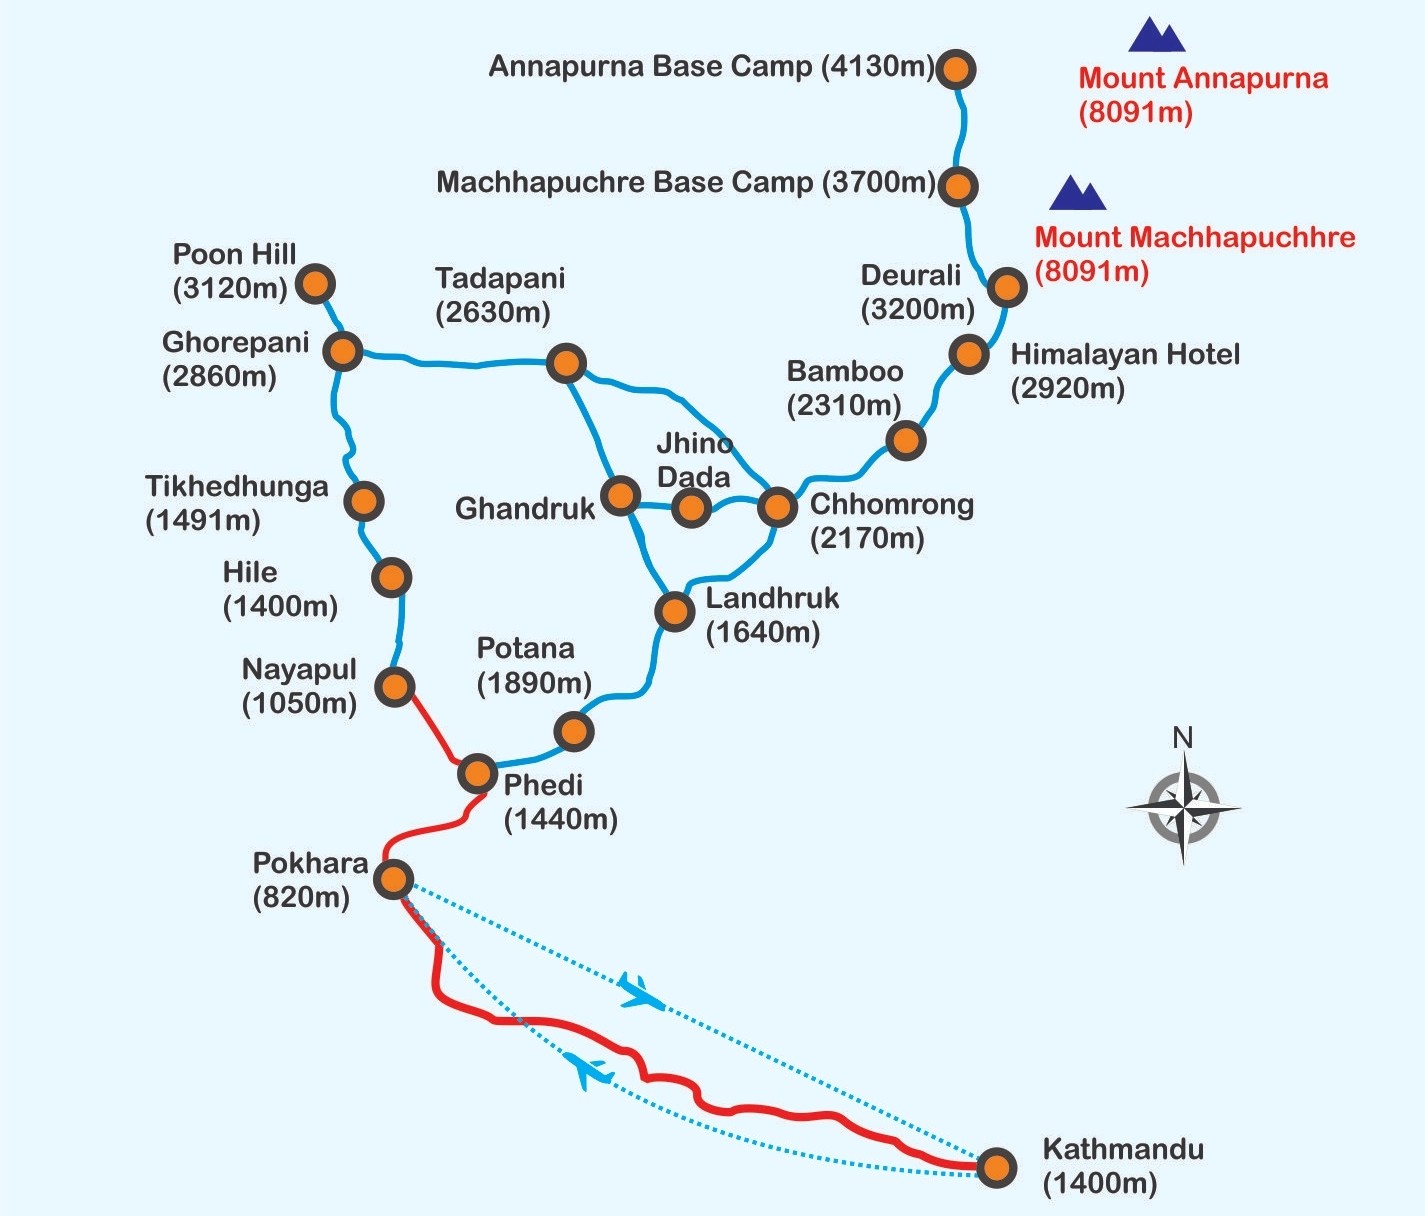 Annapurna Base Camp Short Trek Map